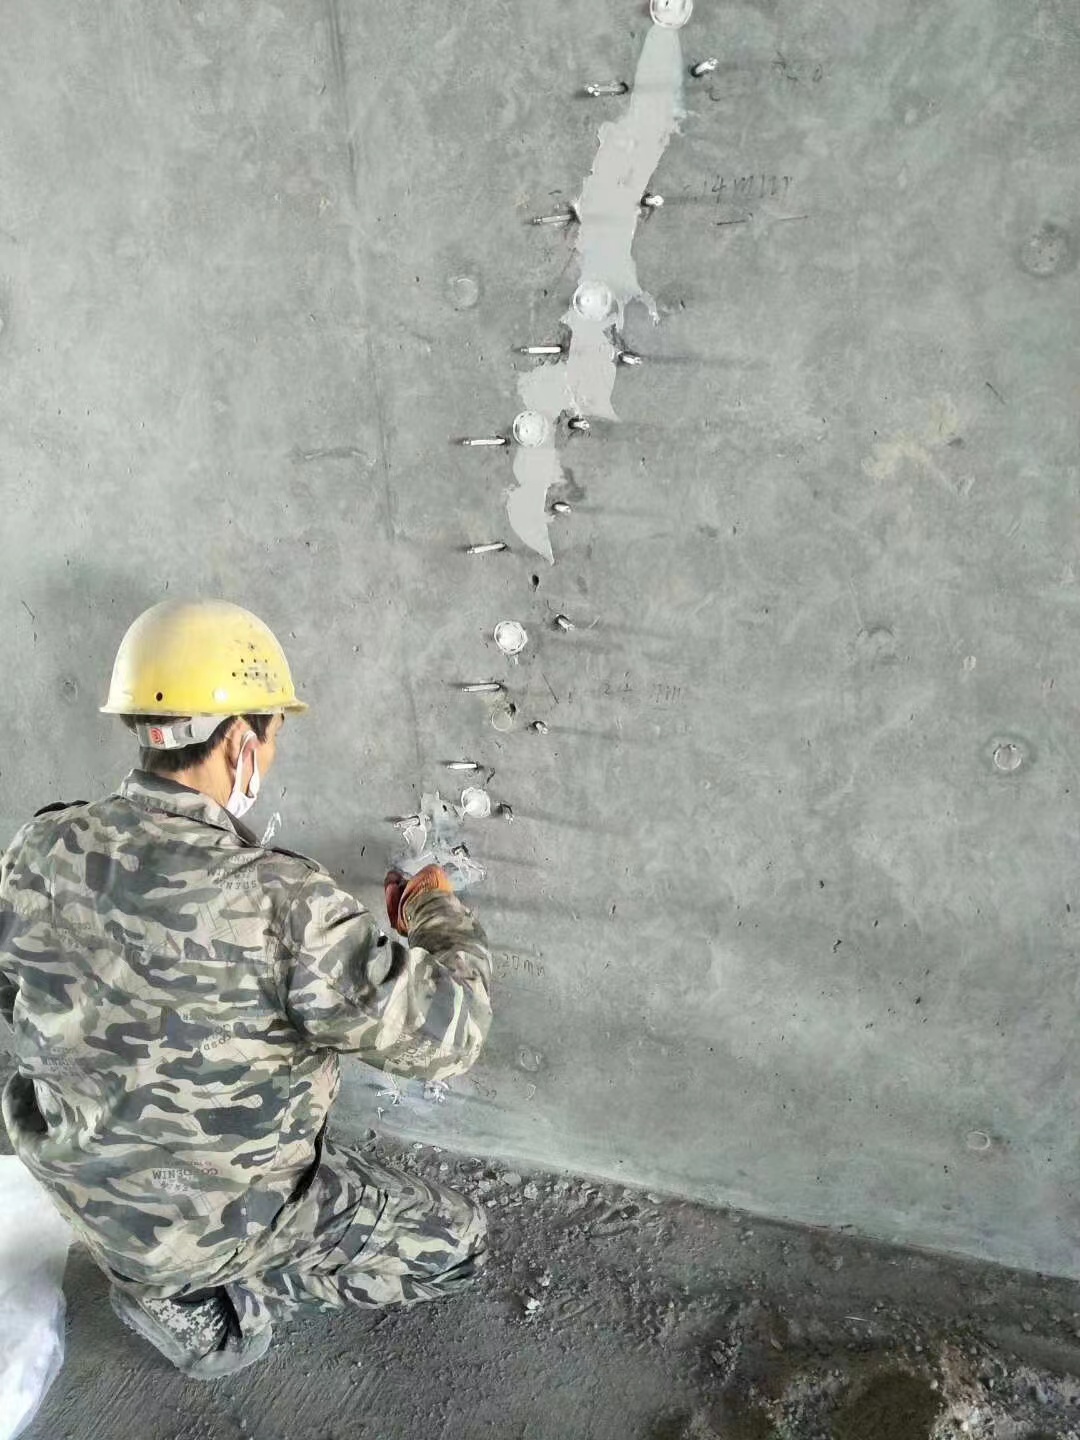 锦州混凝土楼板裂缝加固施工的方案